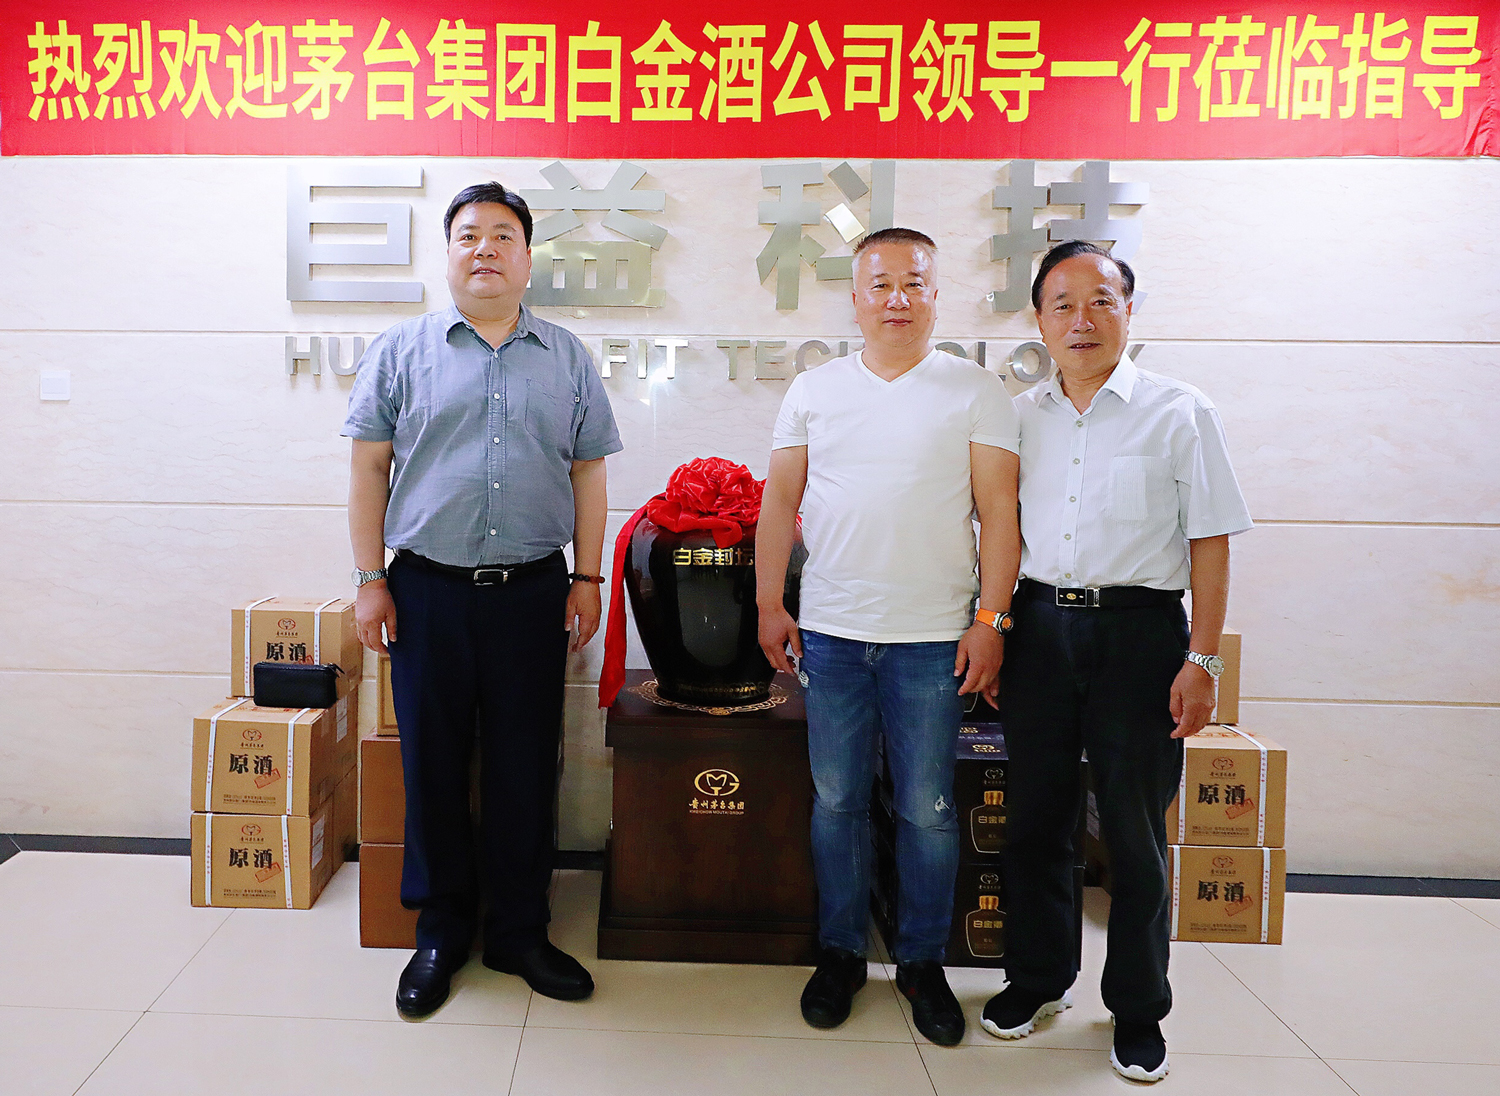 共品美酒 共谋合作 | 白金酒公司牵手杭州巨益科技